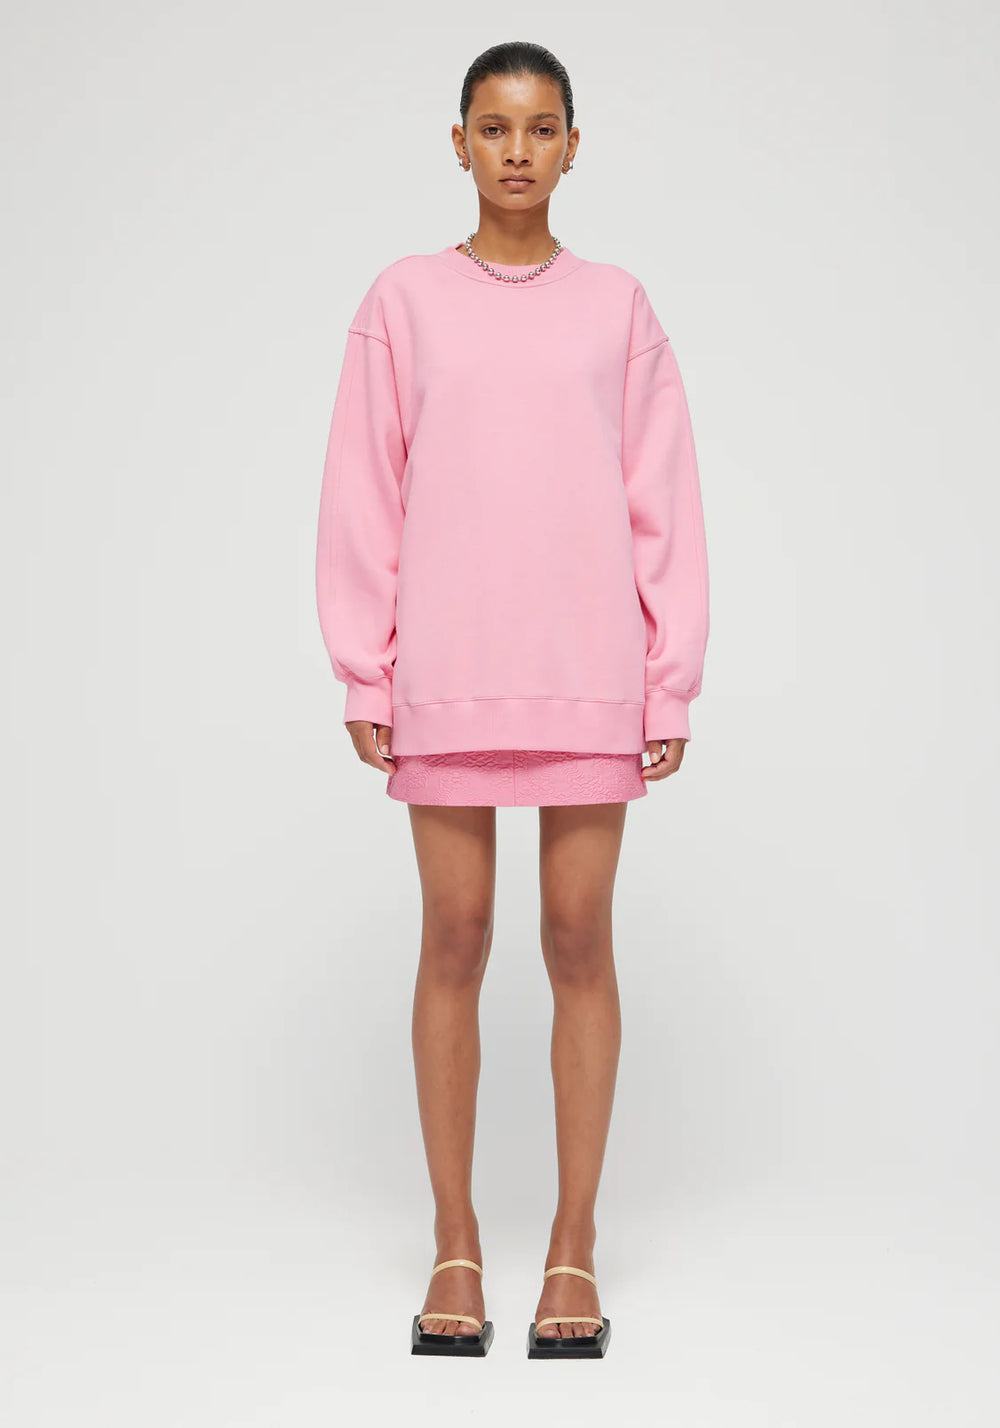 Oversized Sweatshirt in Pop Pink